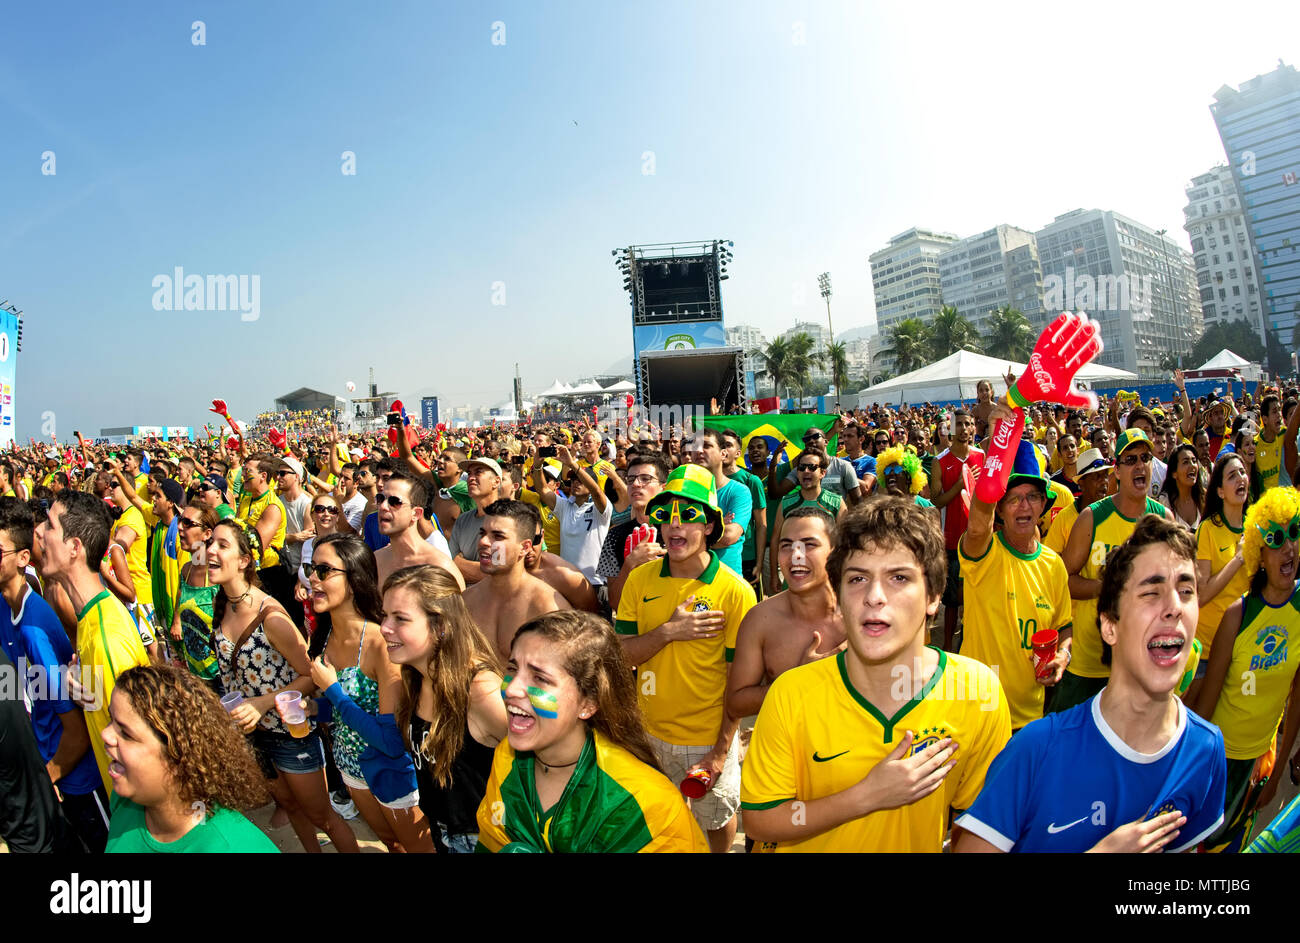 Coupe du monde, Rio de Janeiro, Brésil - le 28 juin 2014 : Soccer fans chanter l'hymne national brésilien à la Fifa Fan Fest, sur la plage de Copacabana Banque D'Images